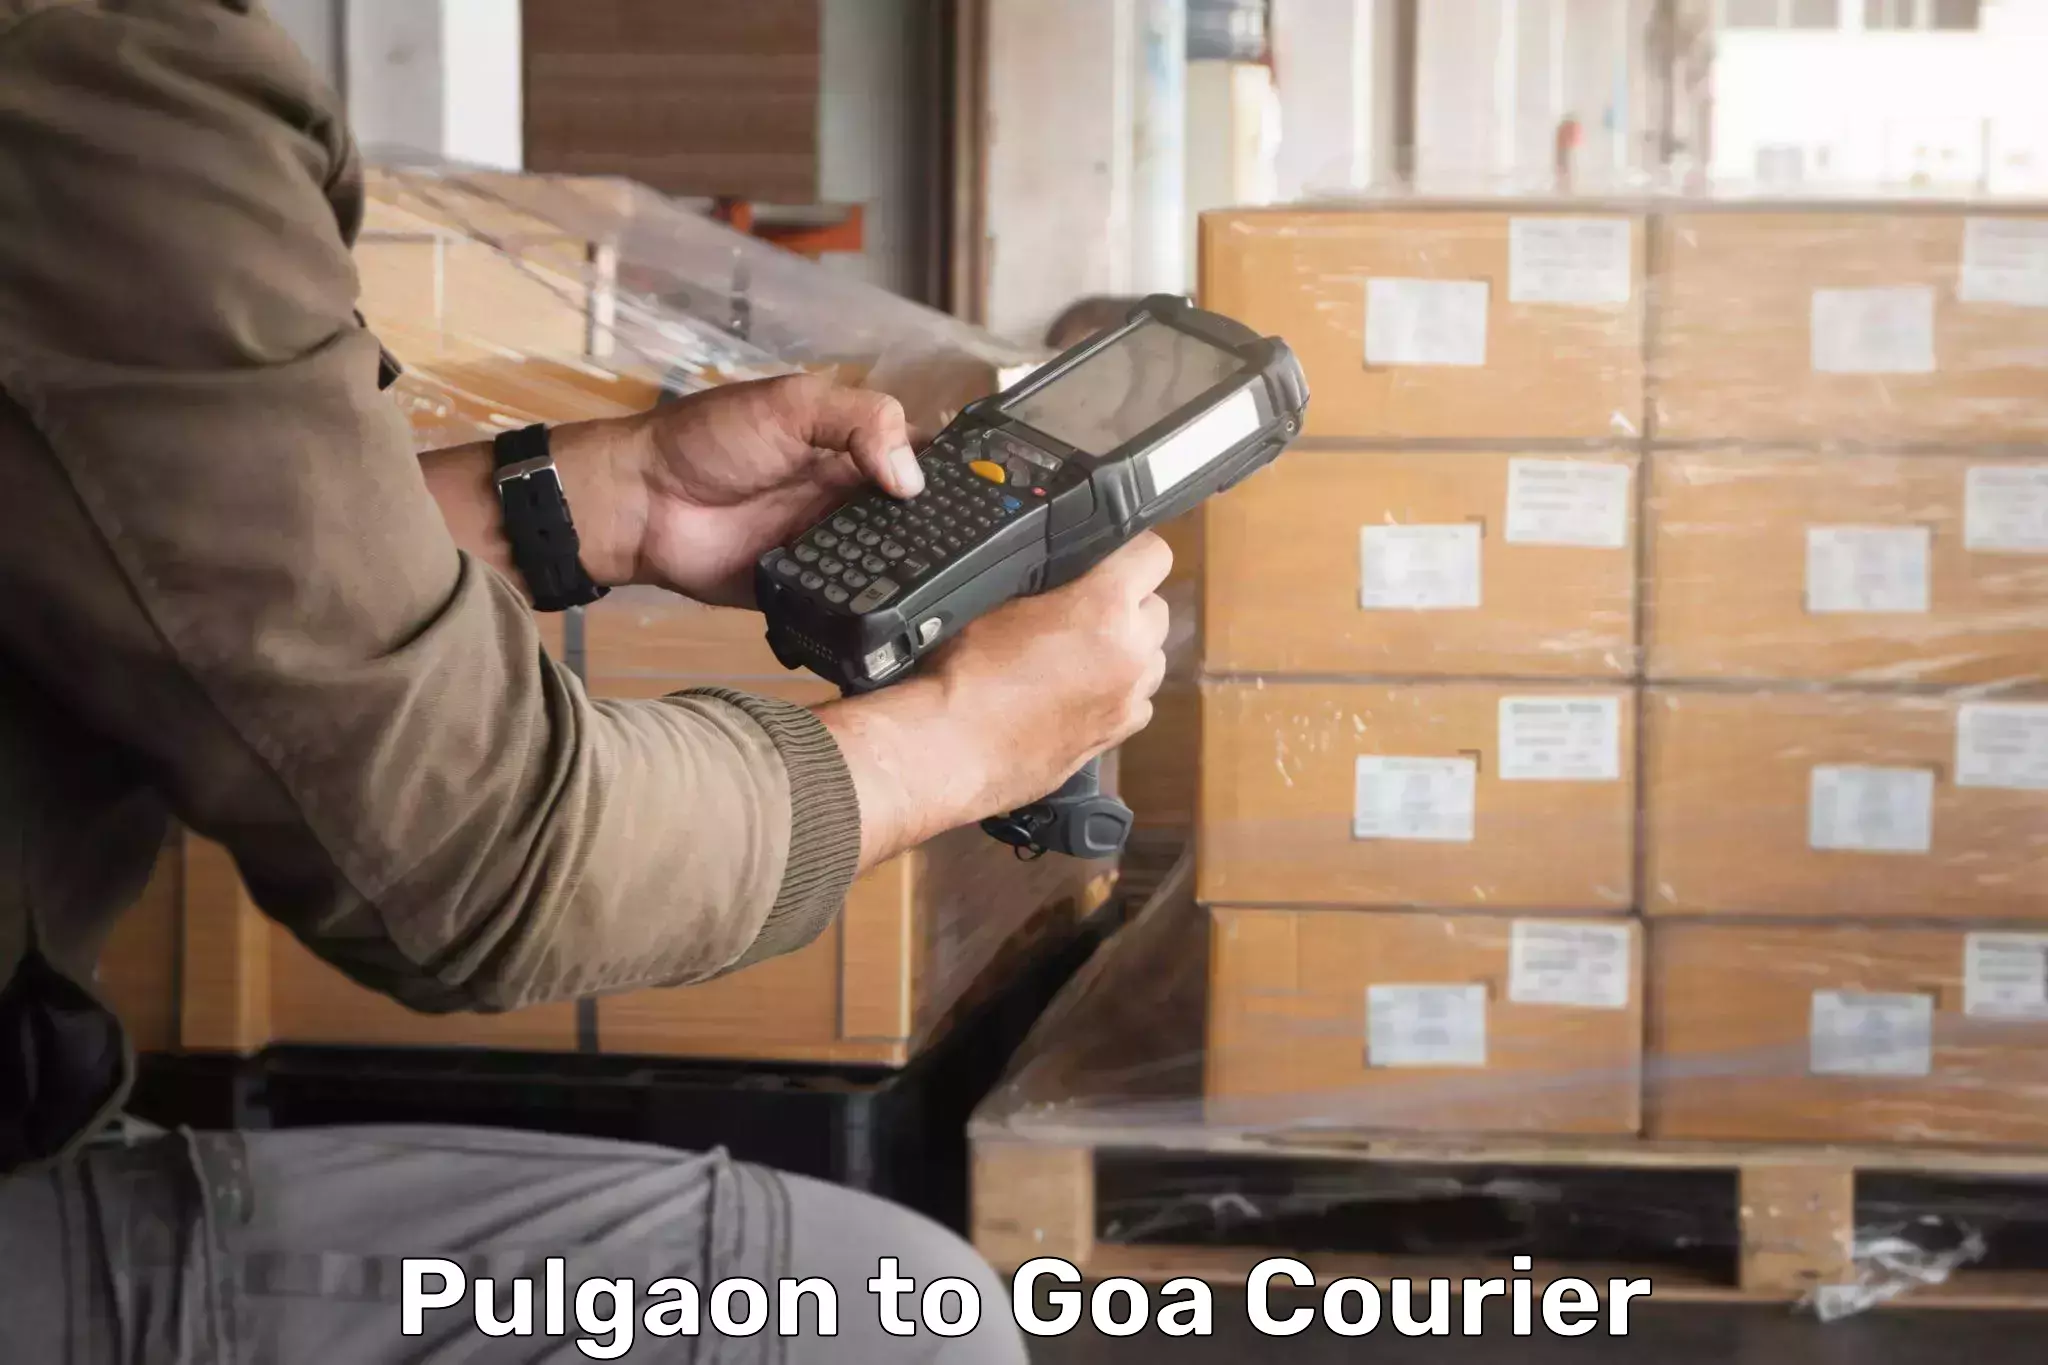 Bulk order courier Pulgaon to Vasco da Gama